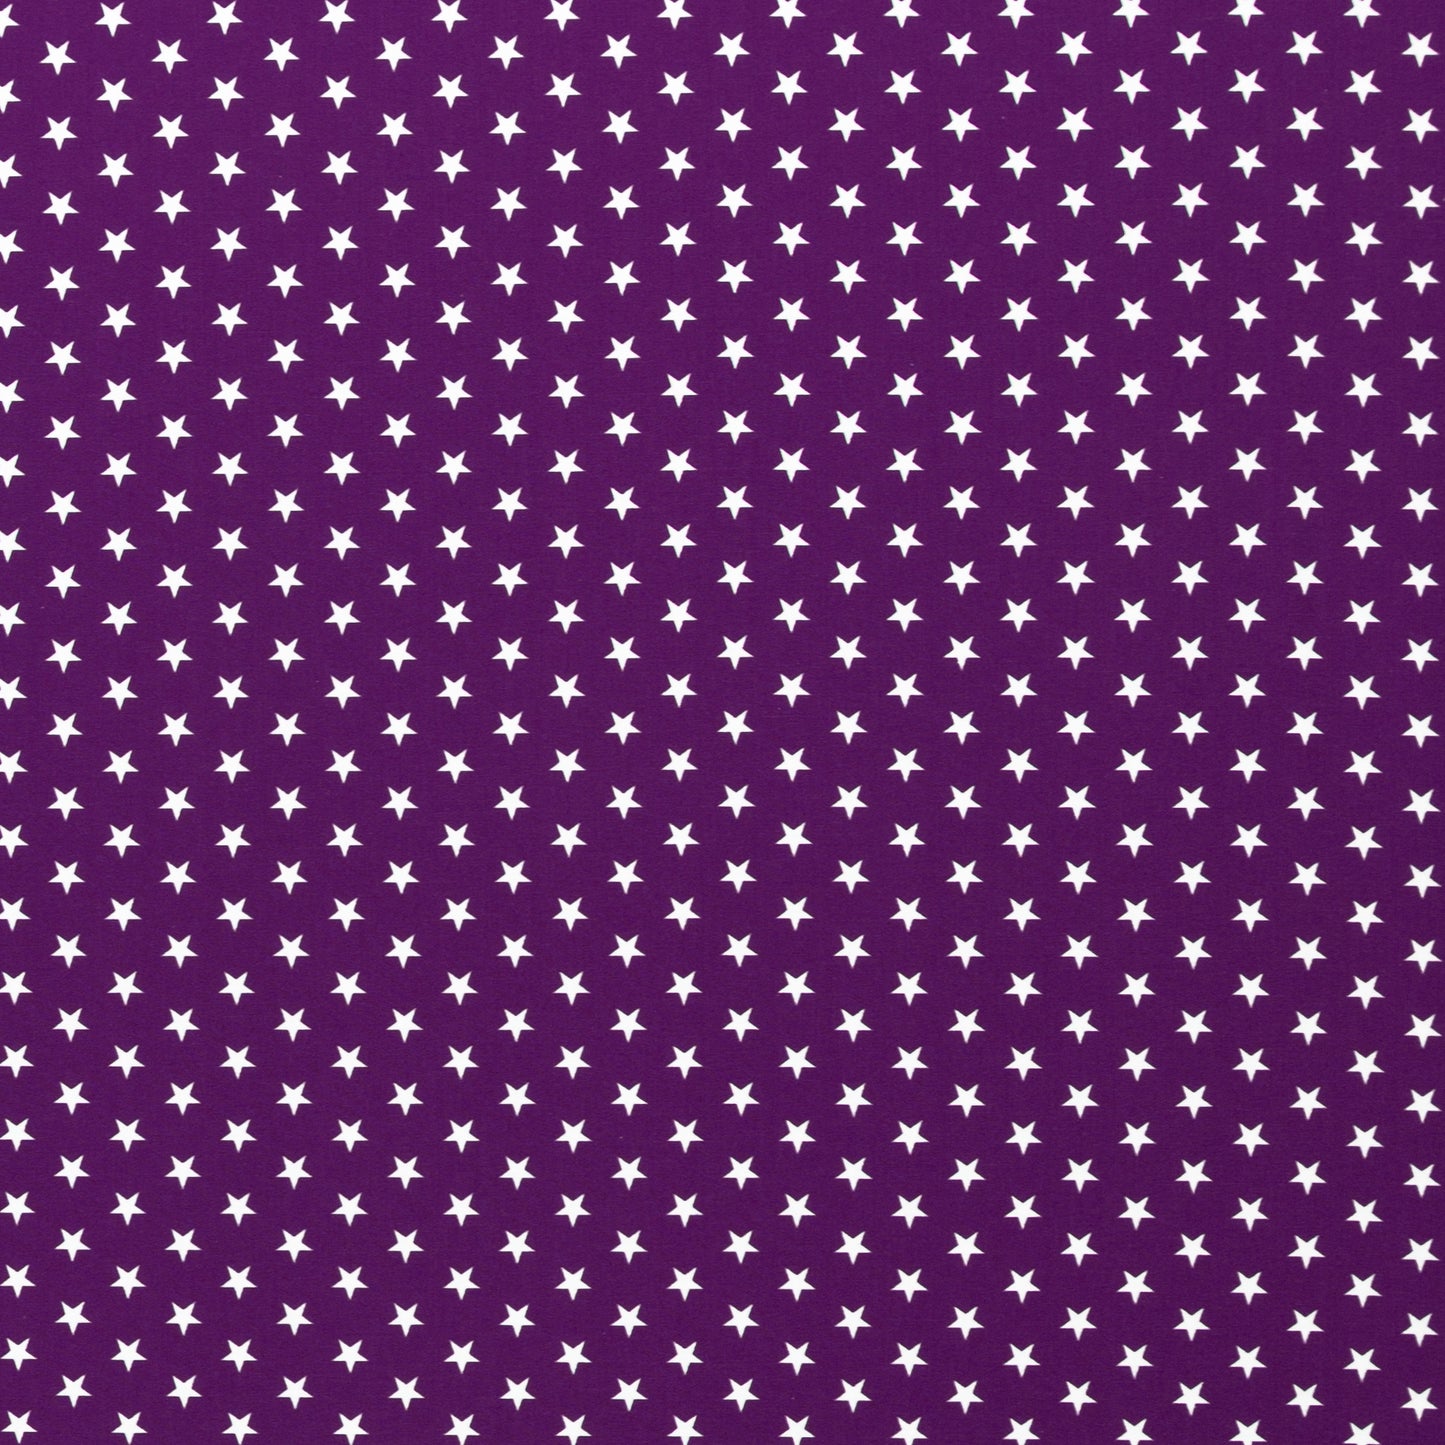 Baumwolle Sterne violett